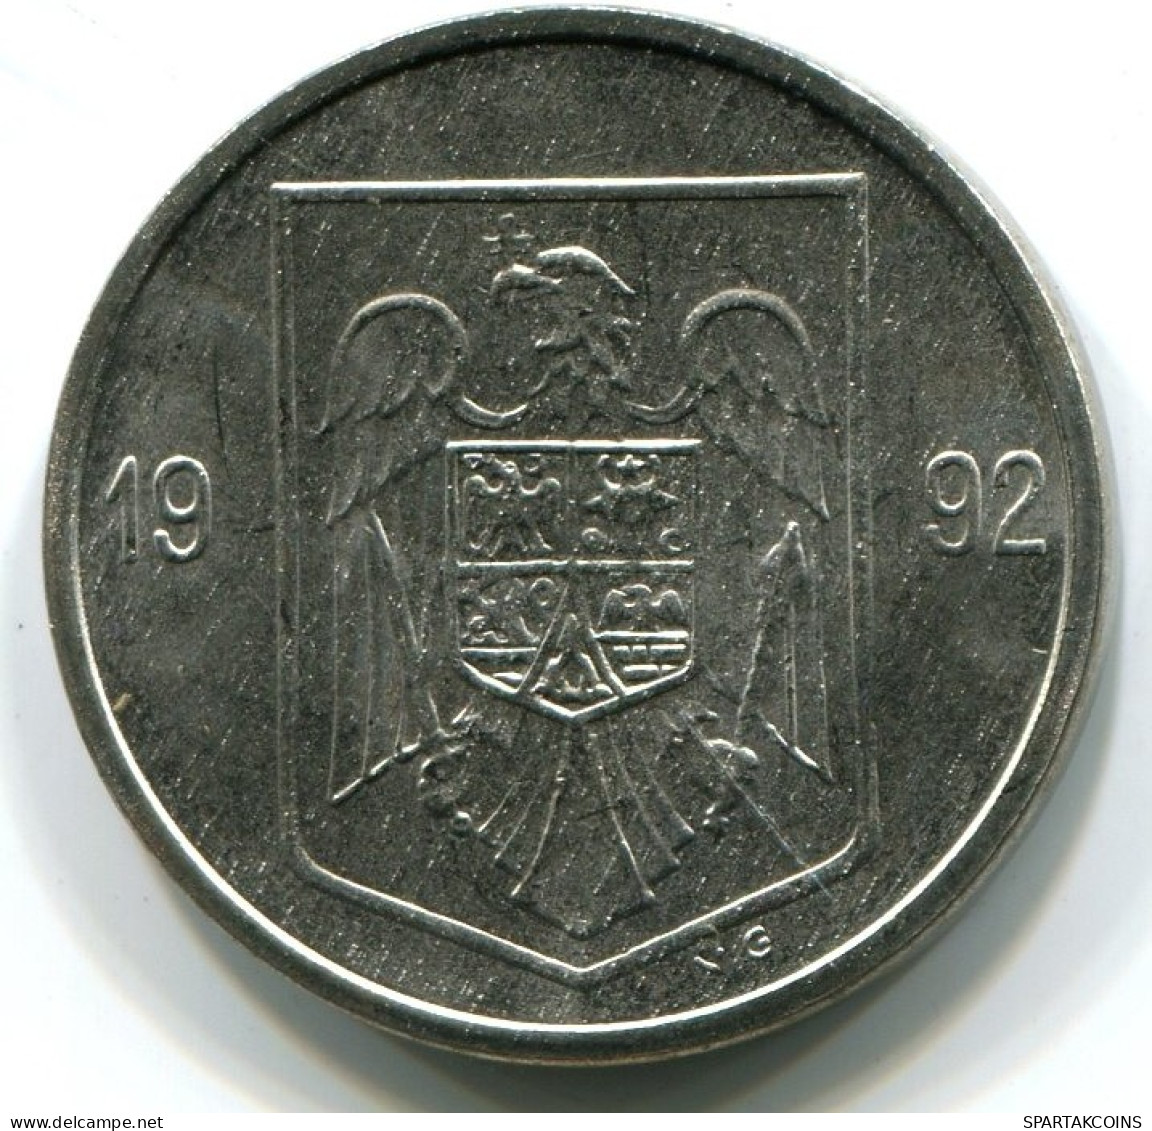 5 LEI 1992 ROMÁN OMANIA UNC Eagle Coat Of Arms V.G Mark Moneda #W11351.E.A - Rumänien